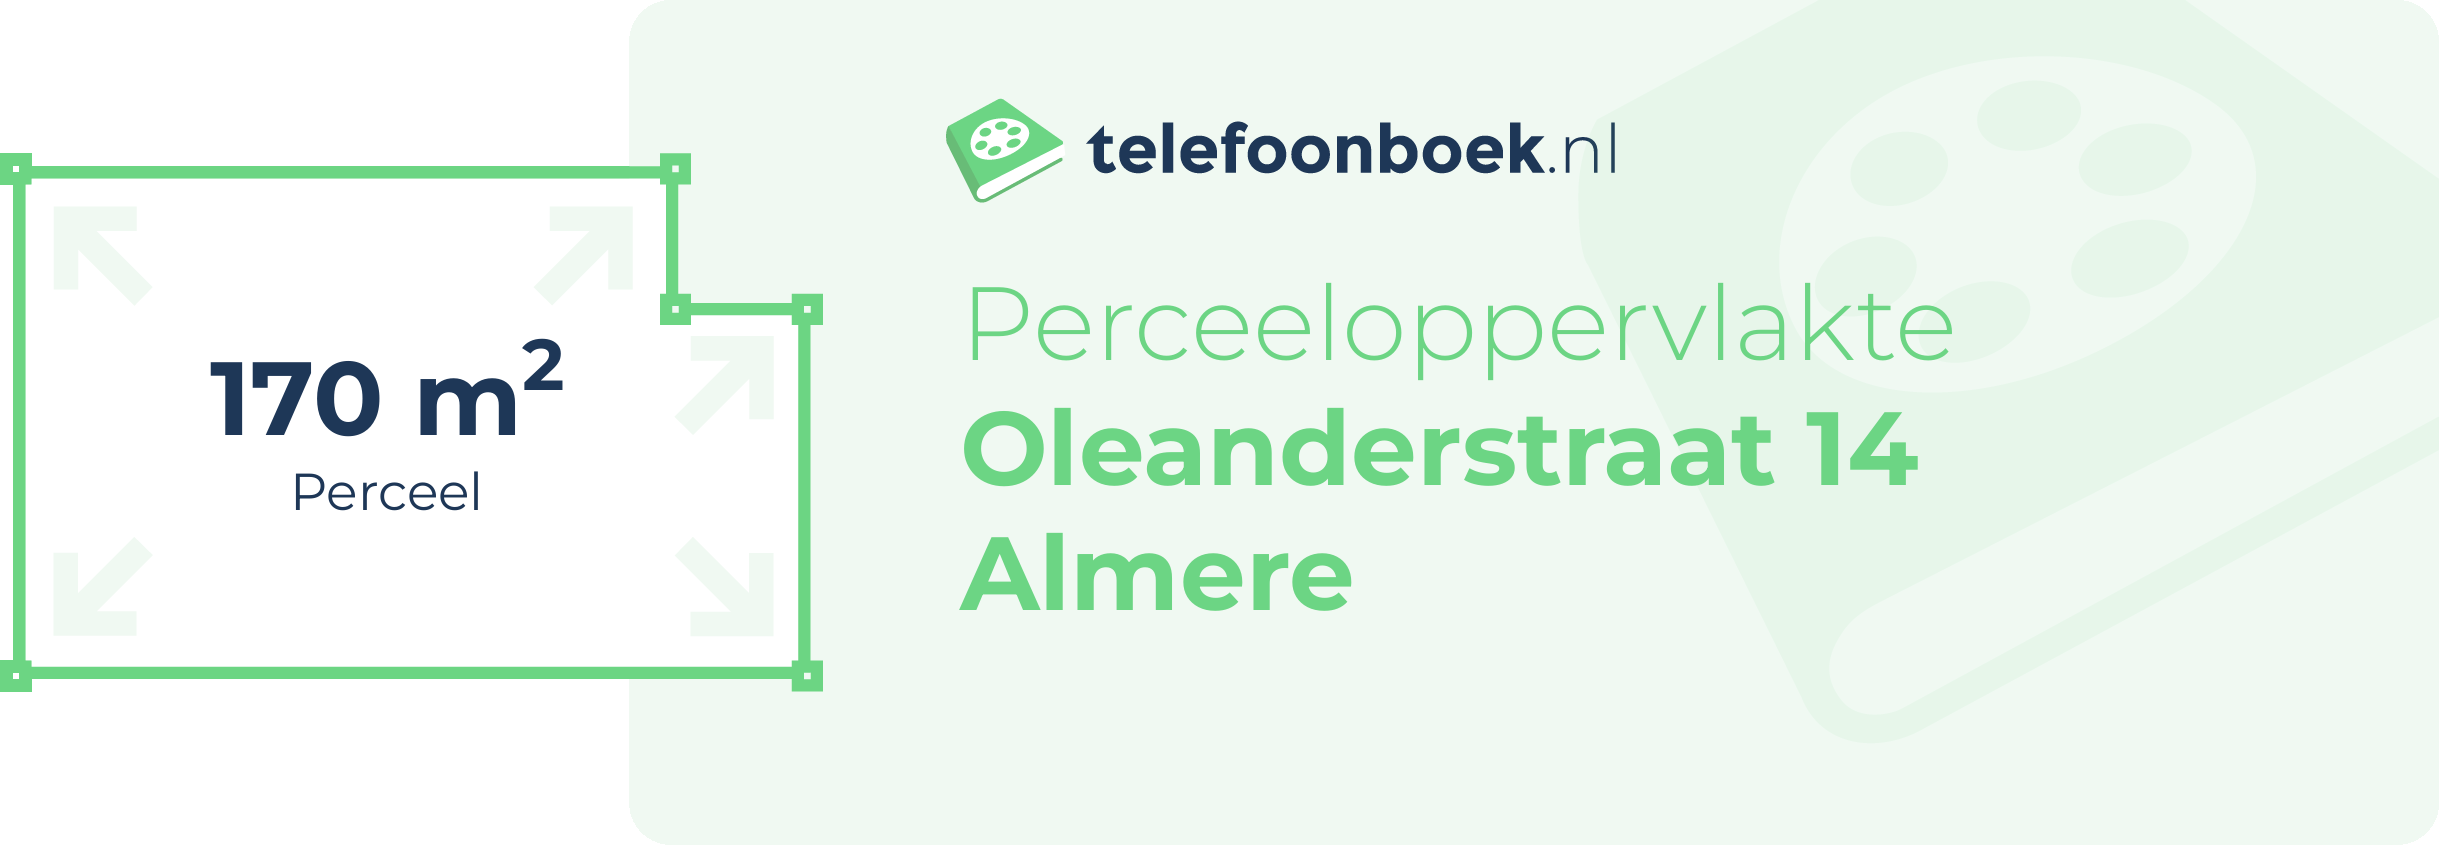 Perceeloppervlakte Oleanderstraat 14 Almere